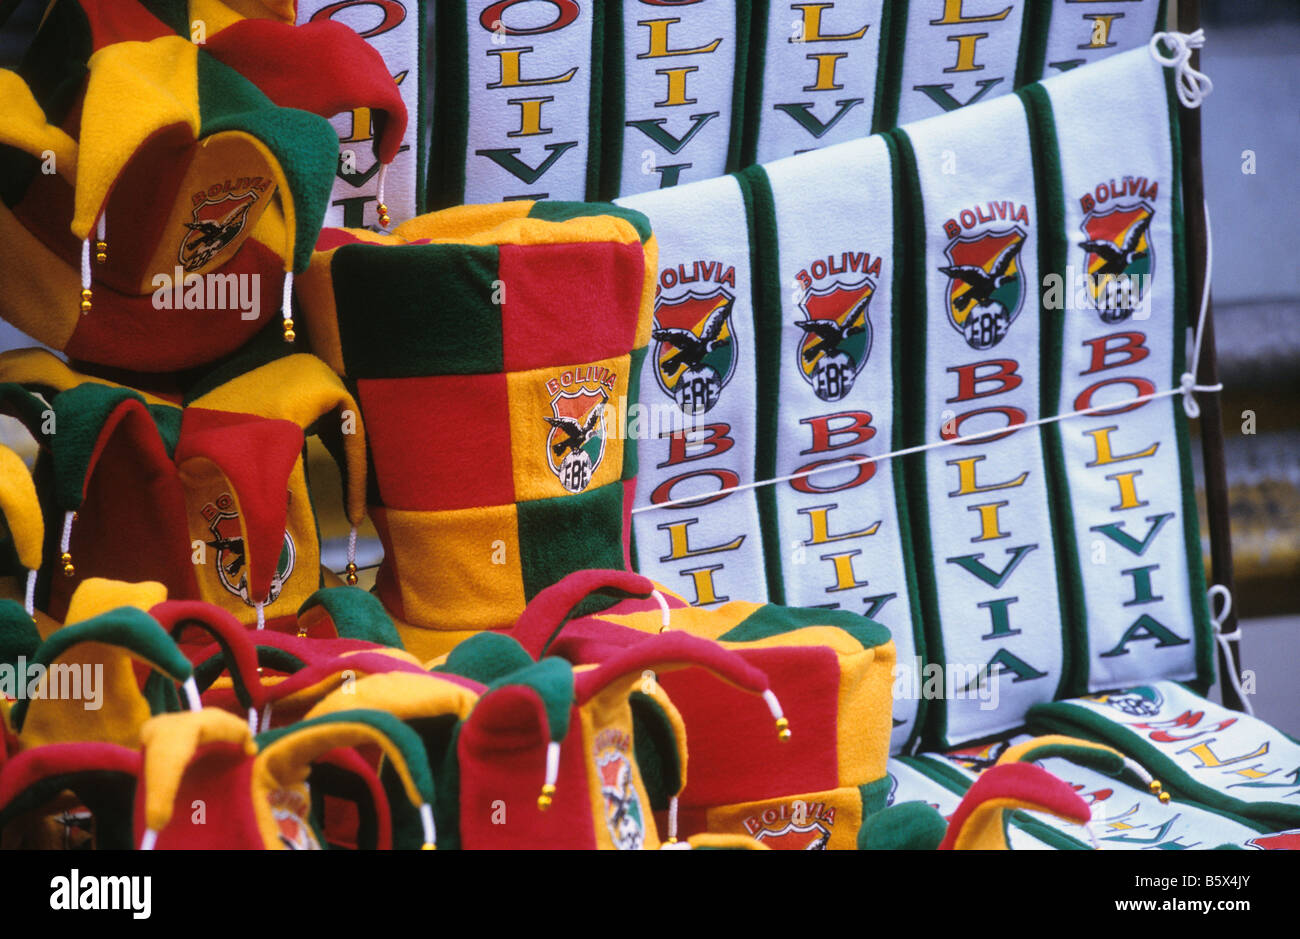 Cappelli e sciarpe della nazionale boliviana in vendita prima di una partita di calcio internazionale, la Paz, Bolivia Foto Stock